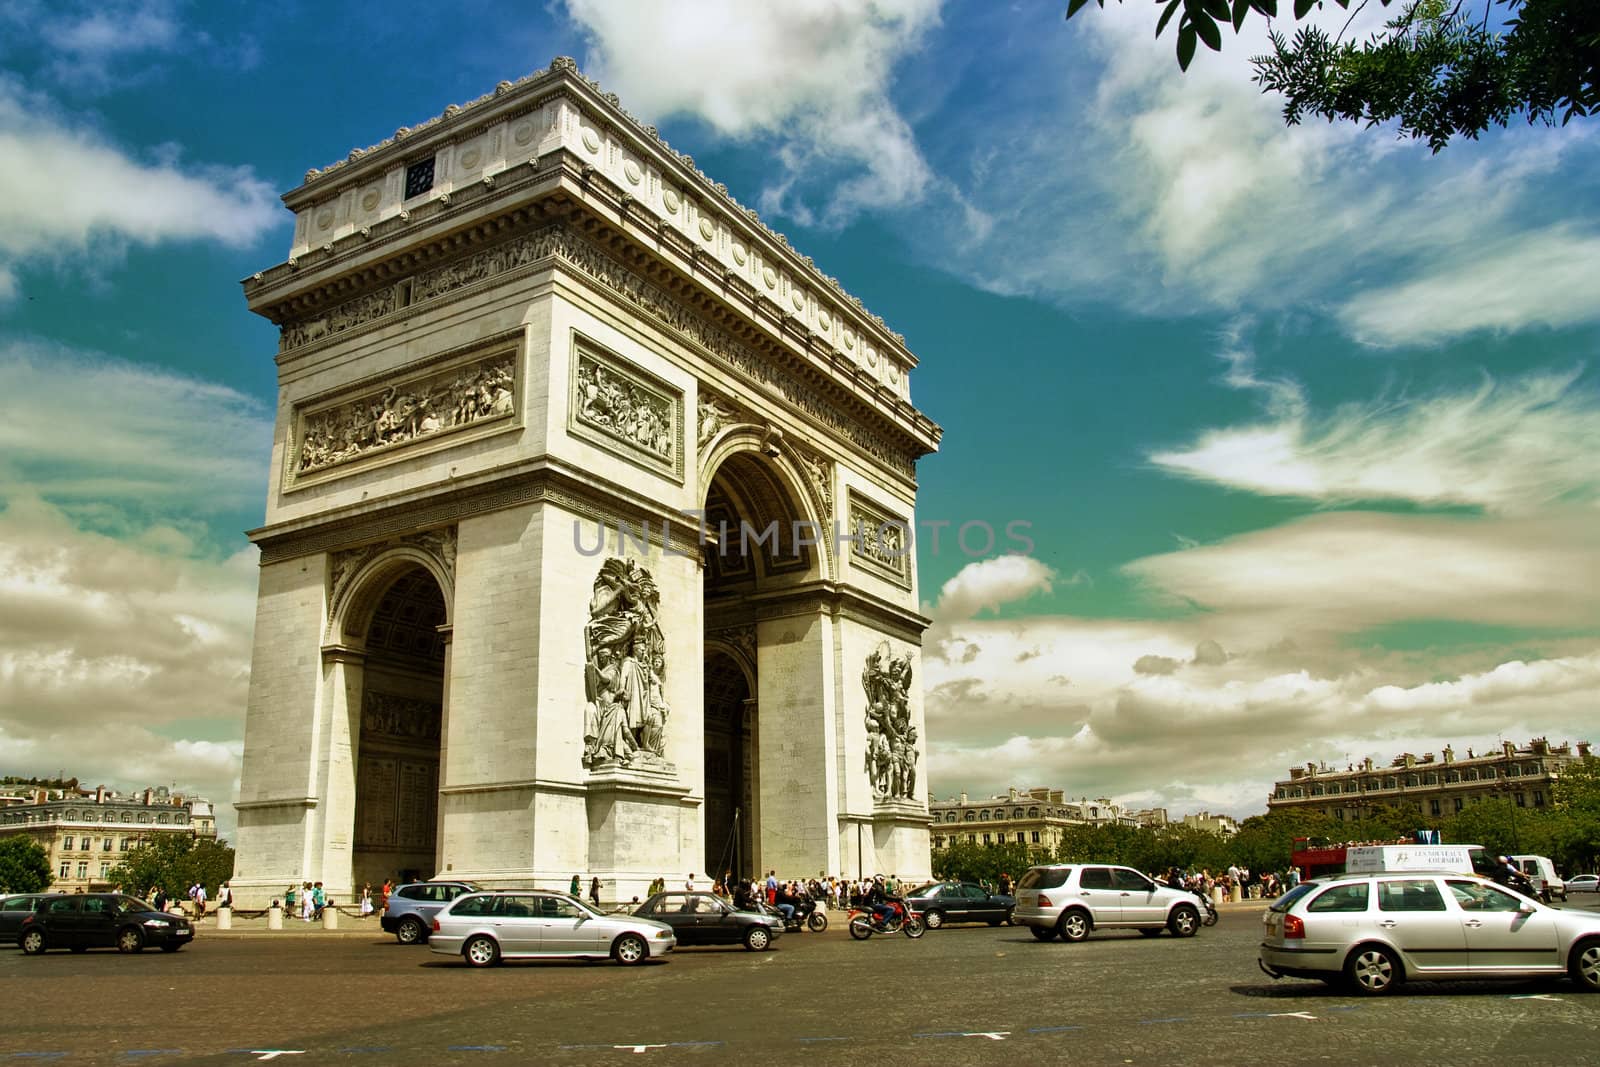 triumphal arch with vintage colors - Paris - France